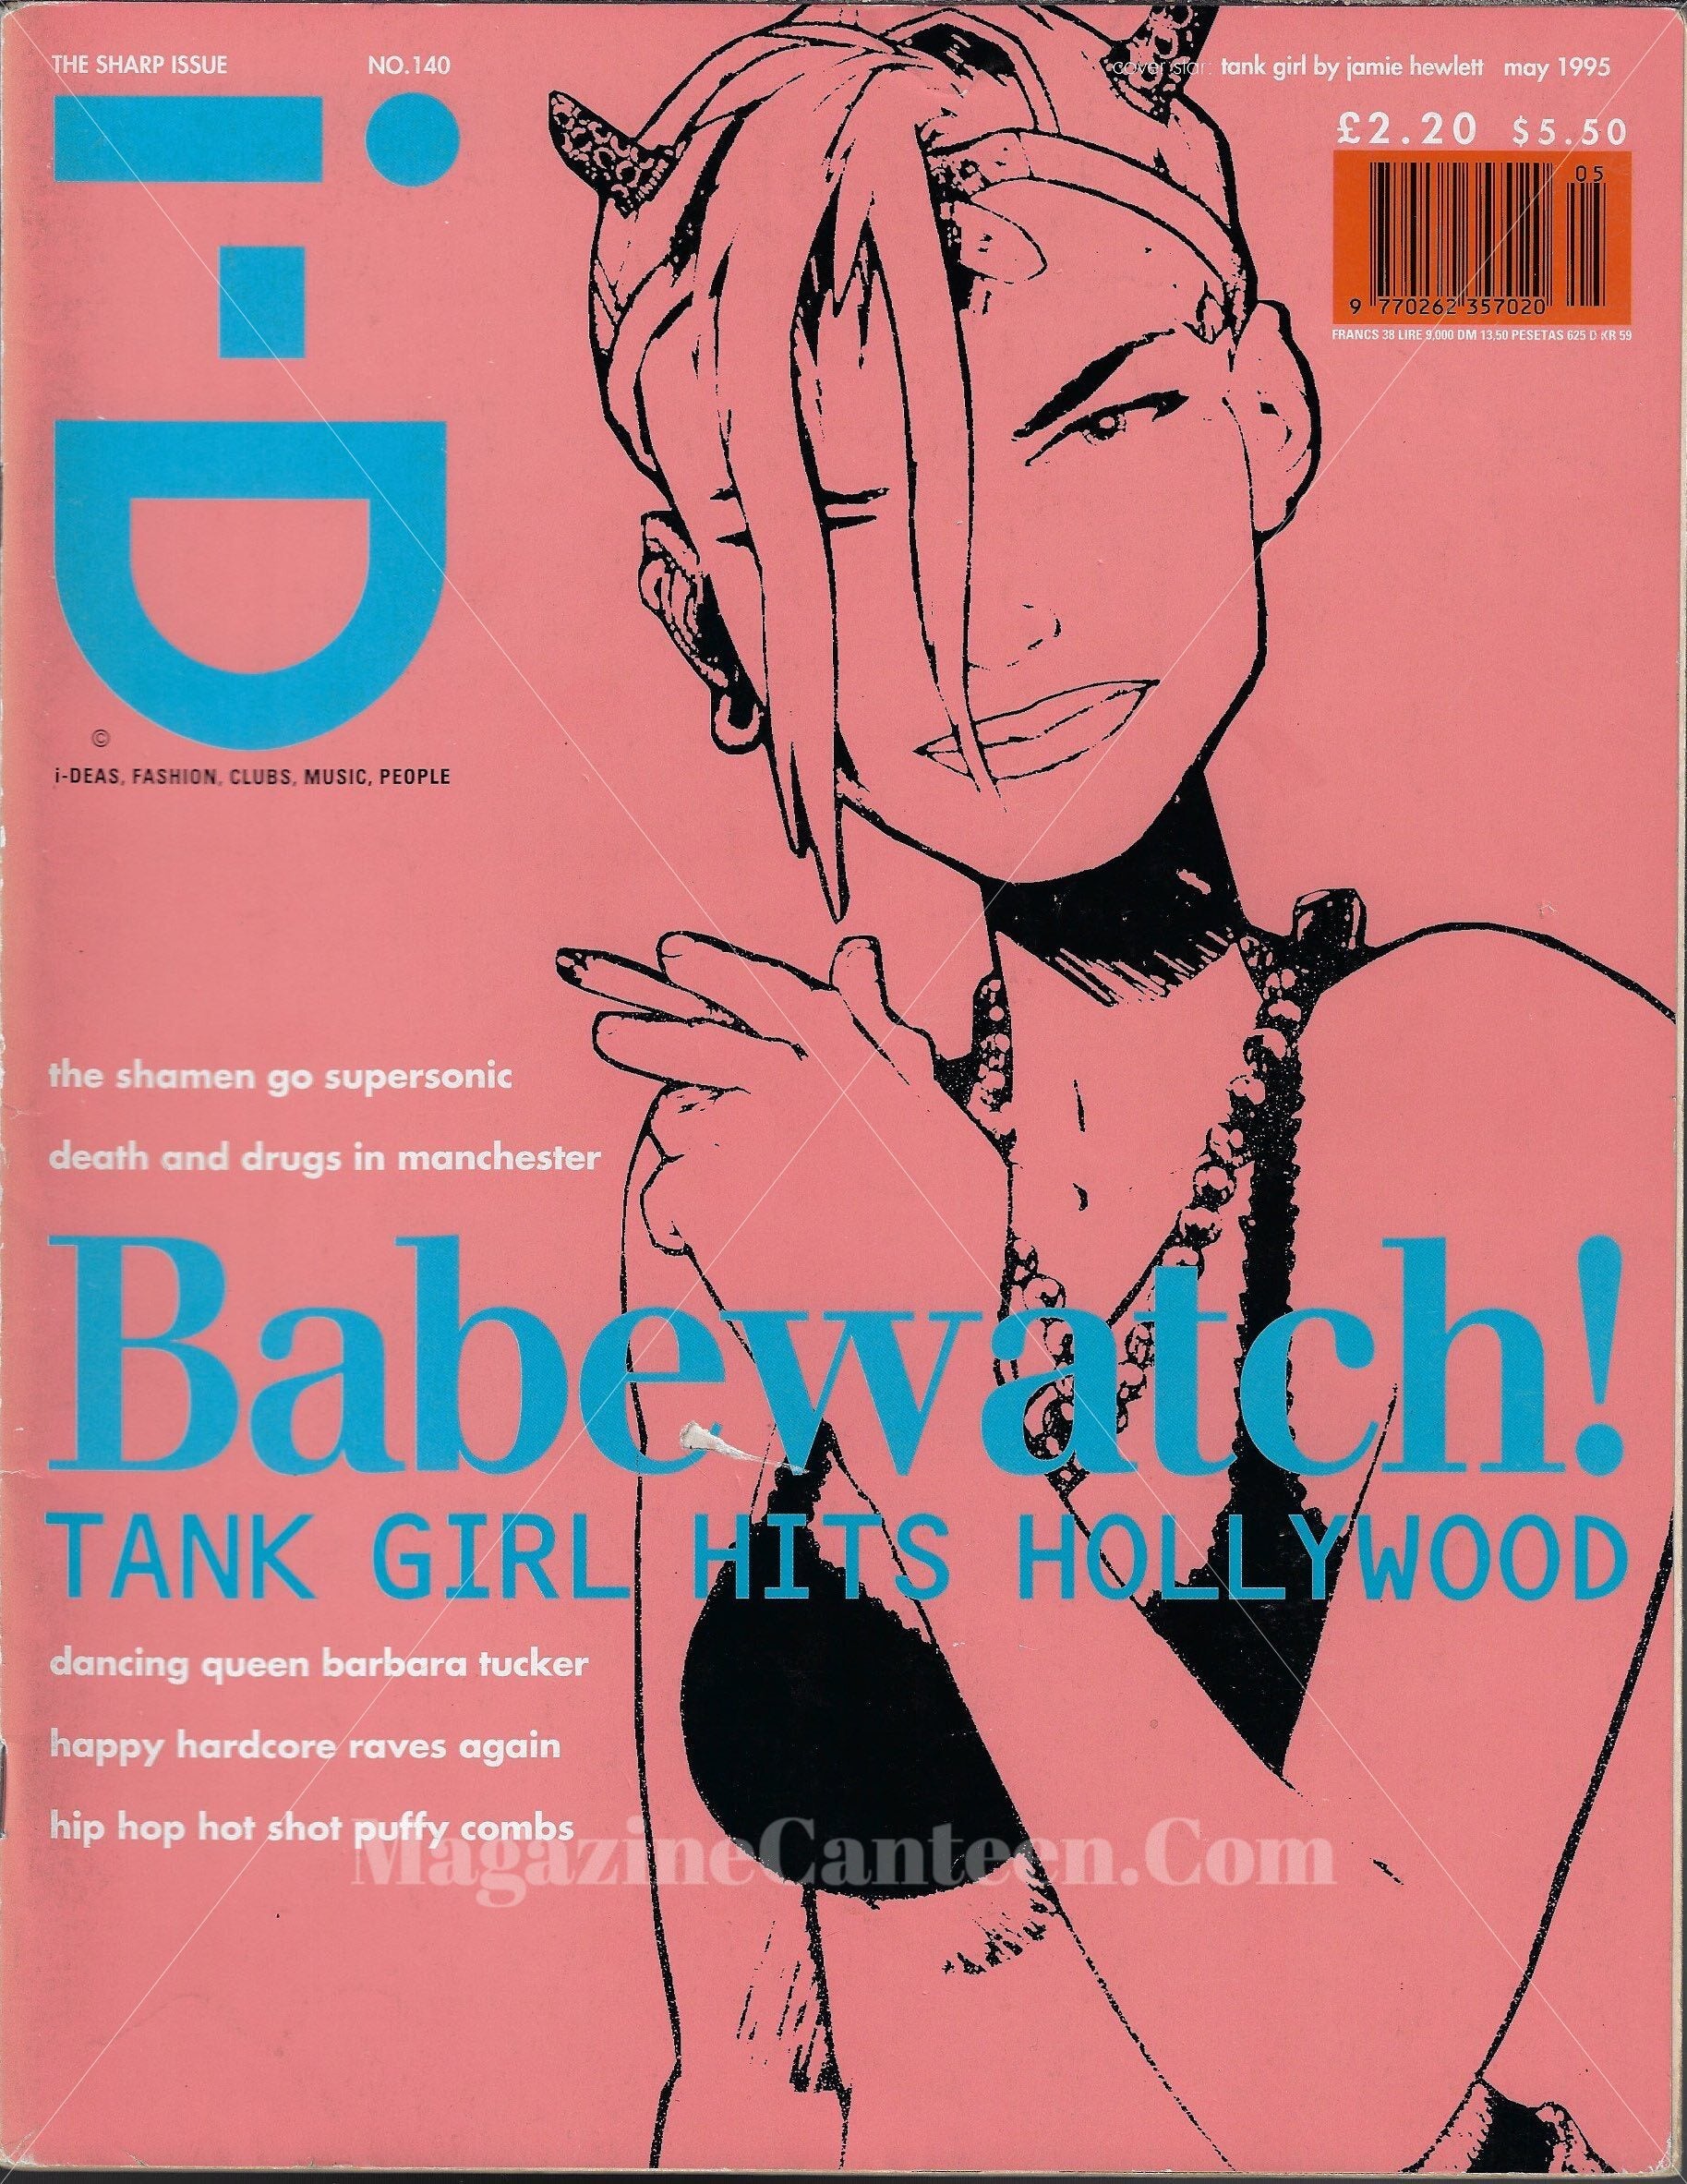 I-D Magazine 140 - Tank Girl 1995